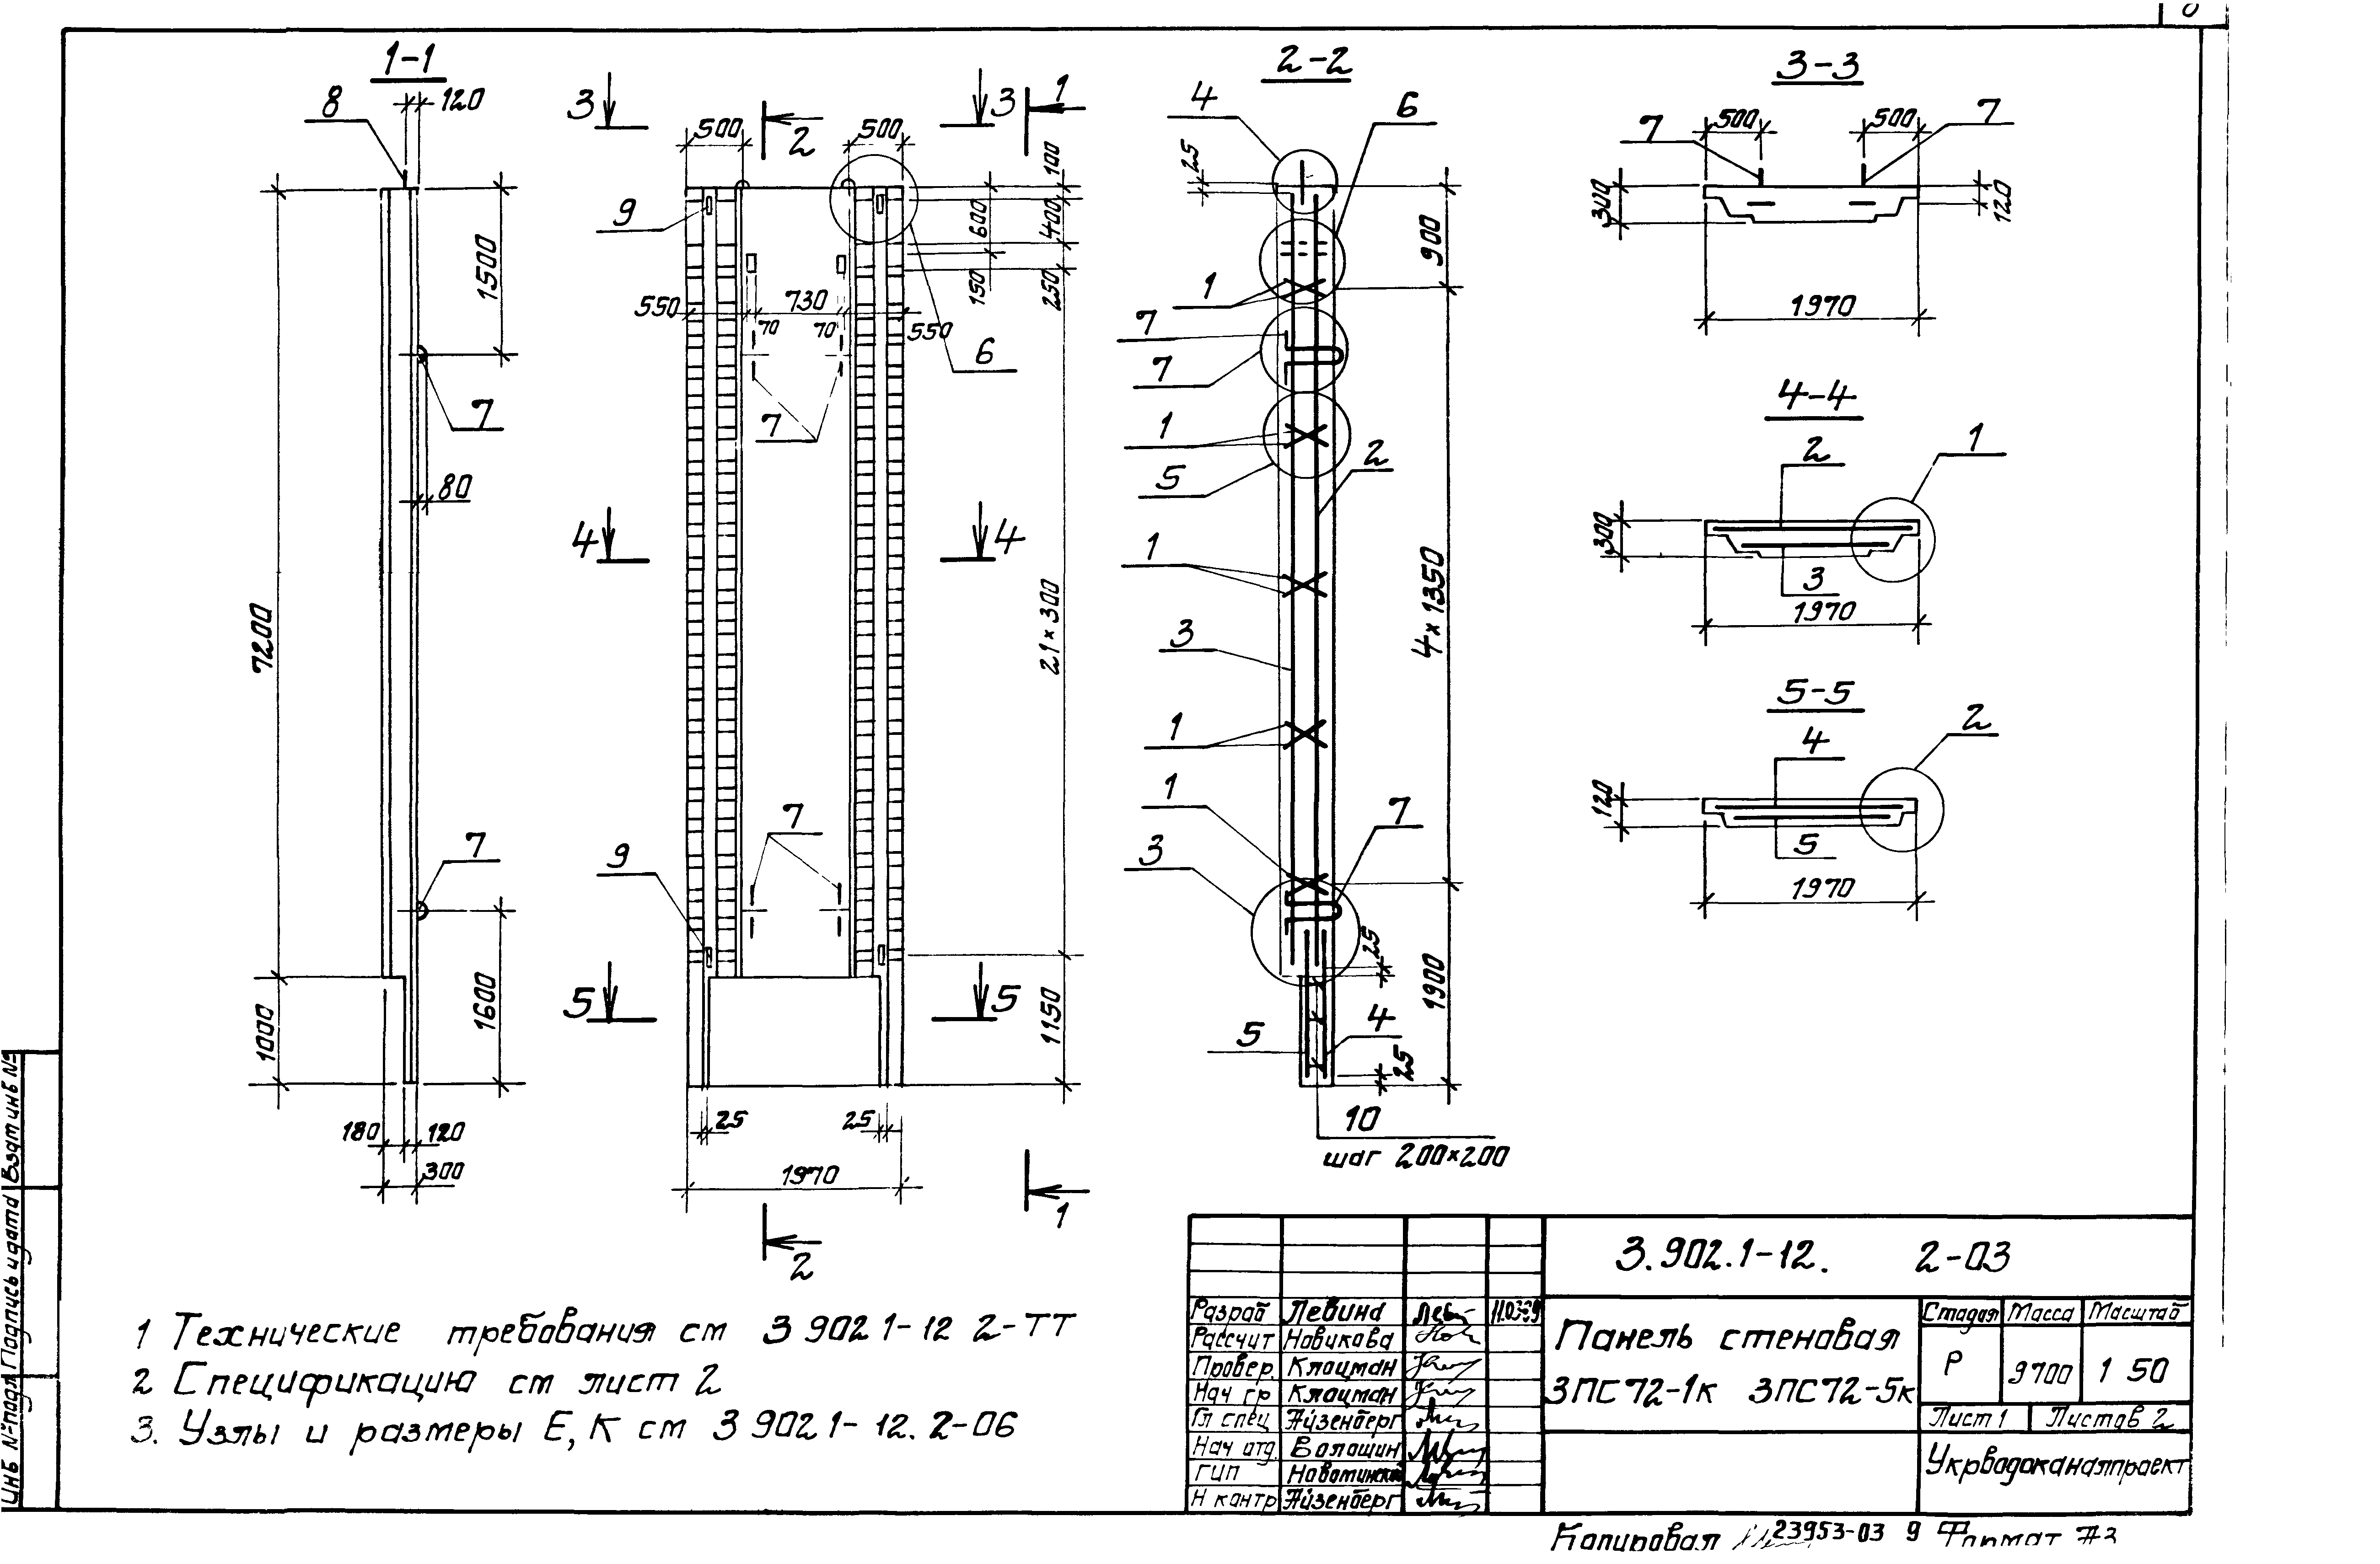 Панель стеновая 3ПС72-1к Серия 3.902.1-12, вып.2